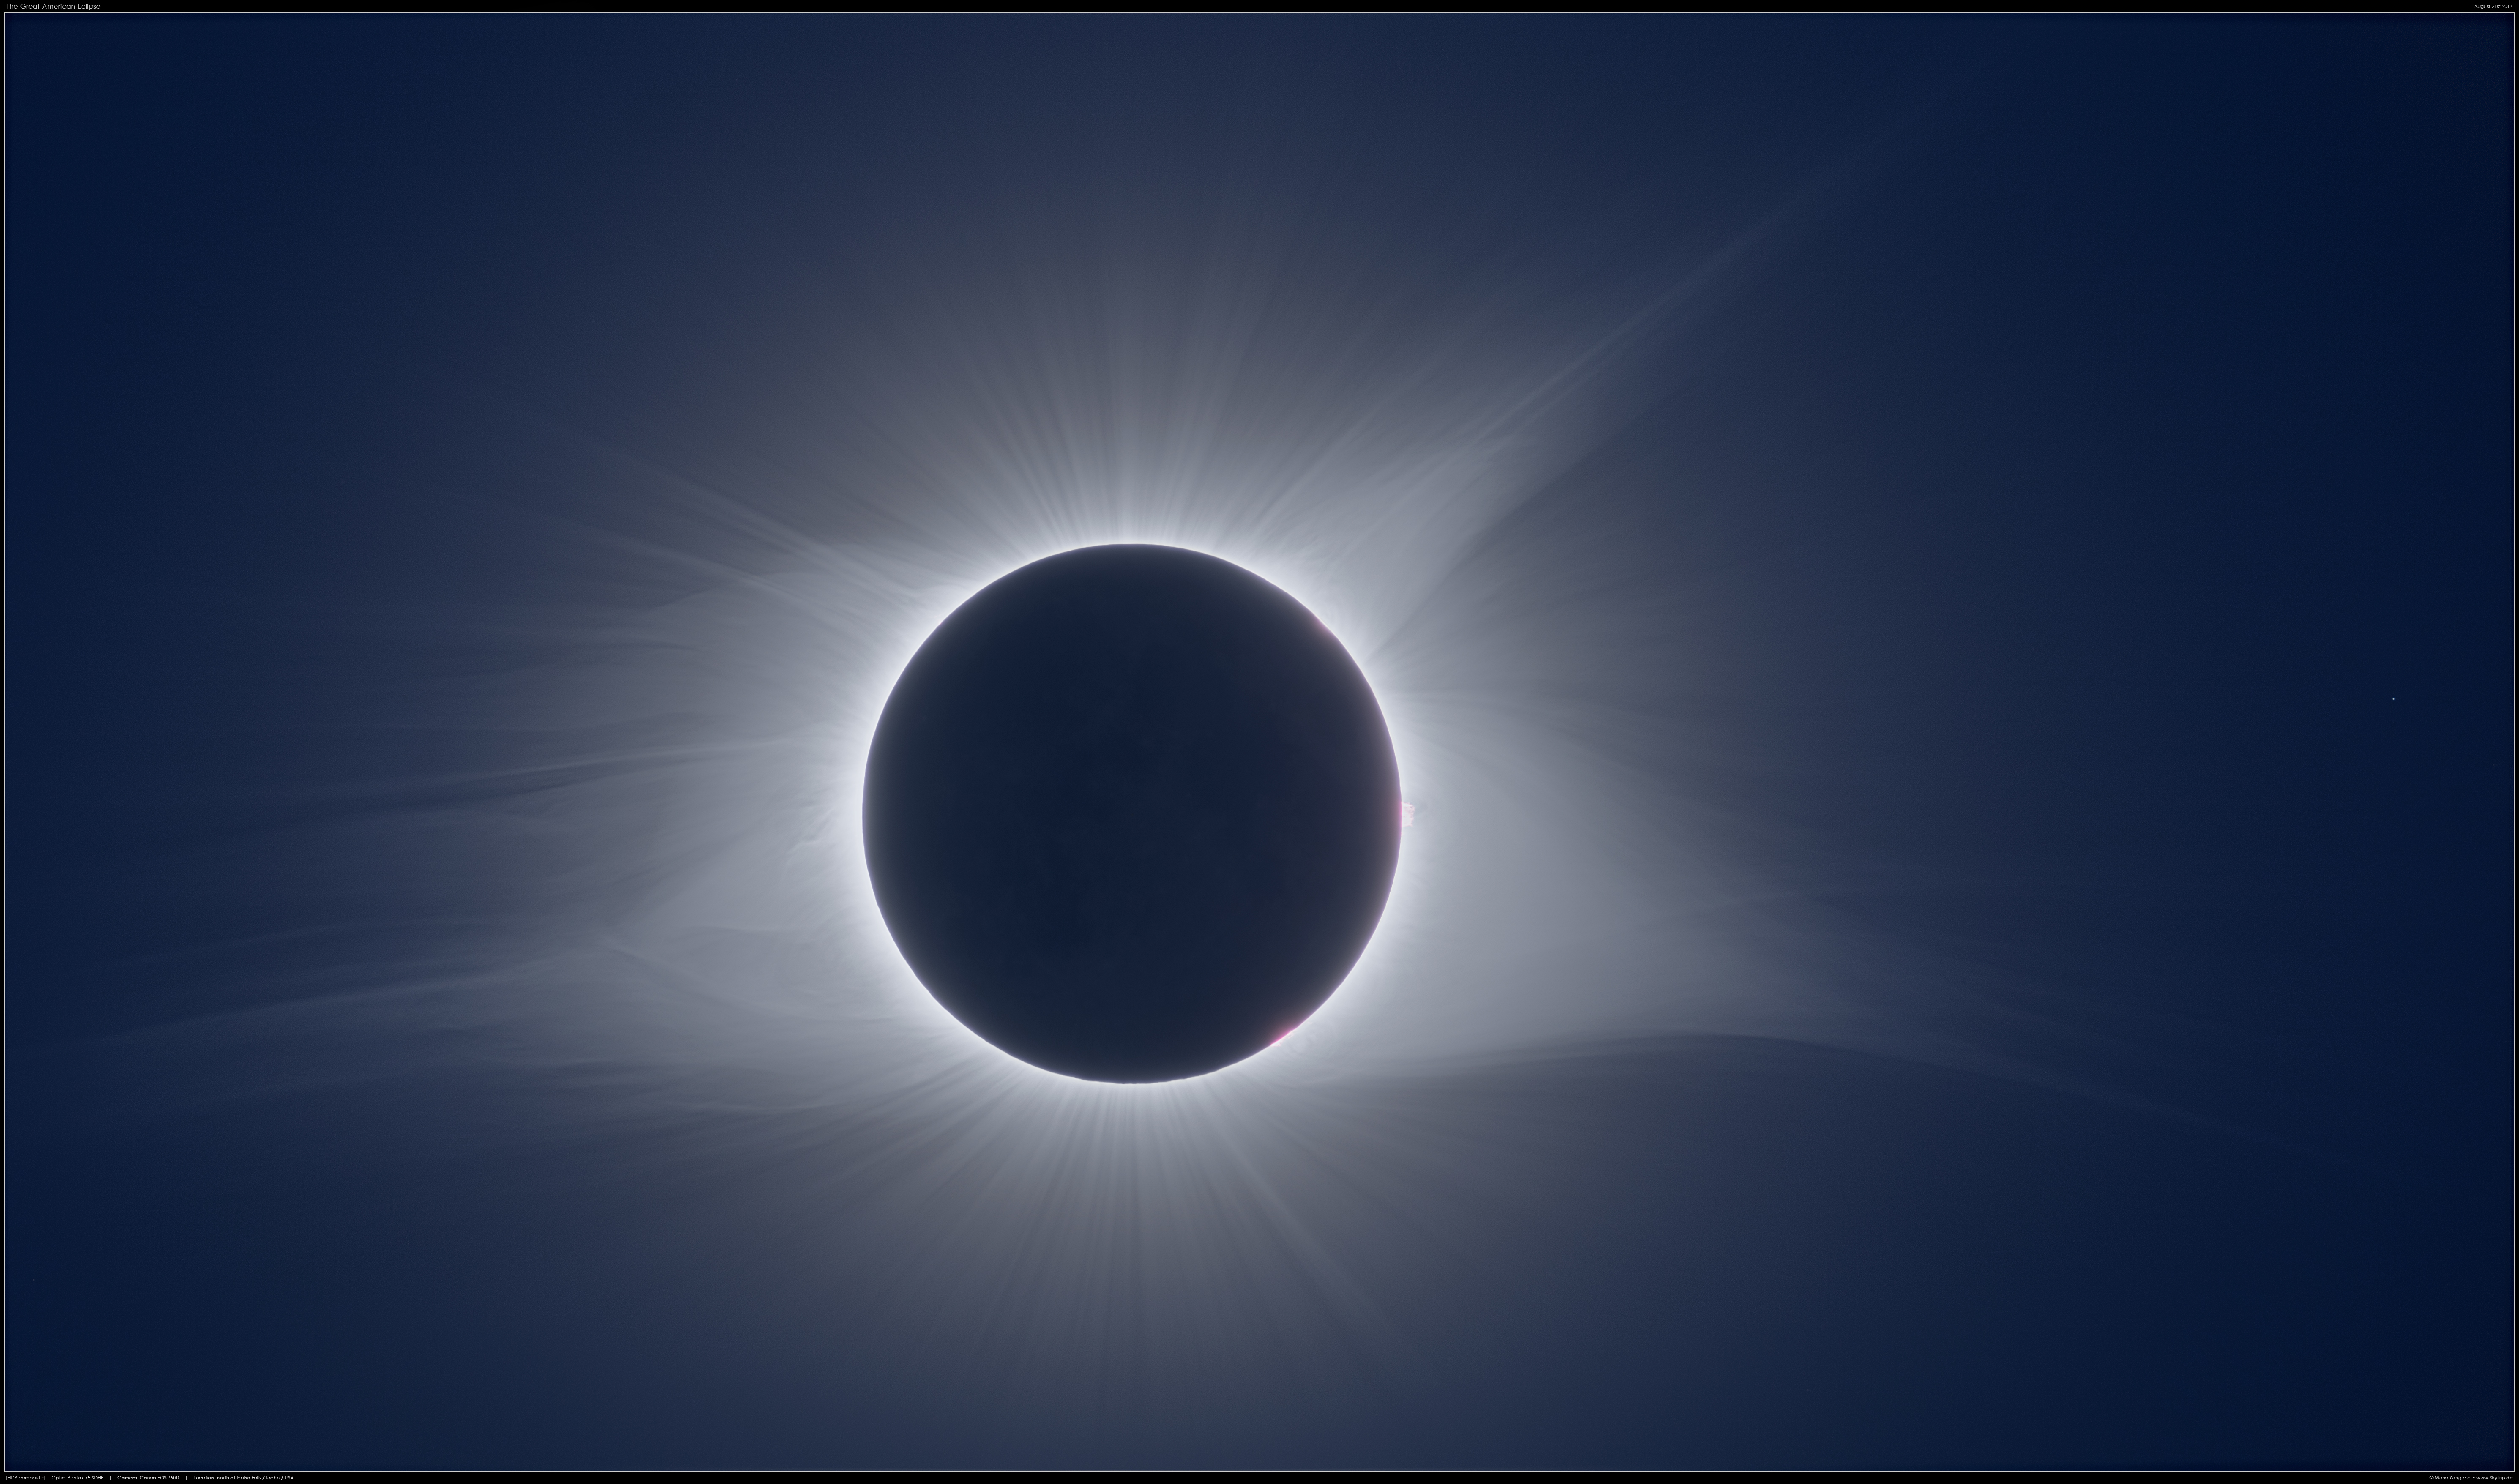 Sonnenfinsternis 2017 - Totalitt: HDR-Komposit der Korona